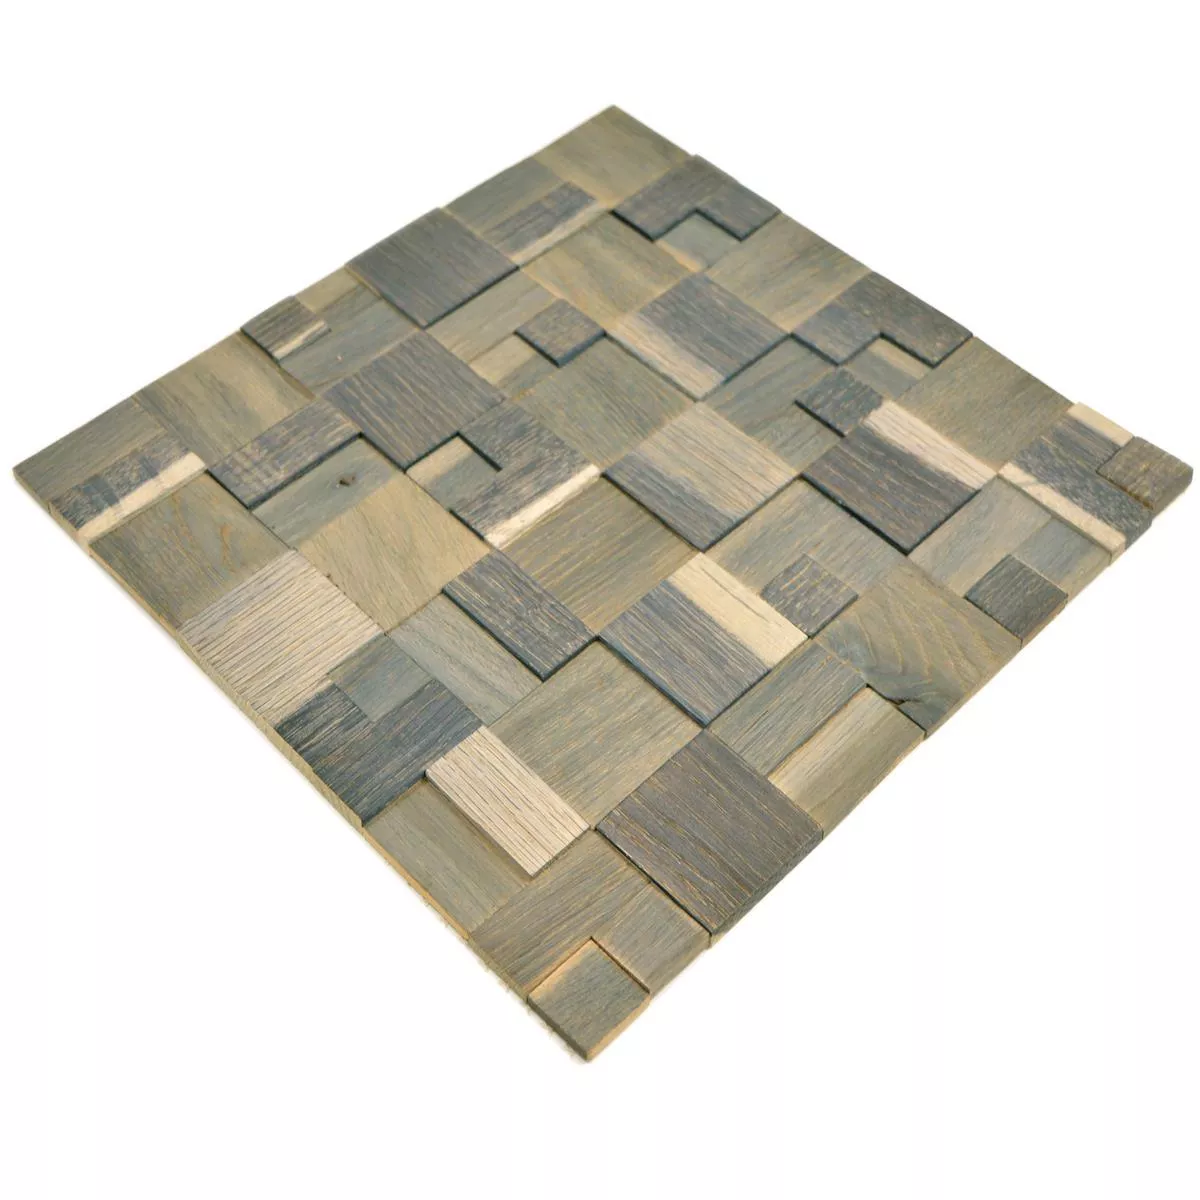 Sample Mosaic Tiles Wood Paris Self Adhesive 3D Grey